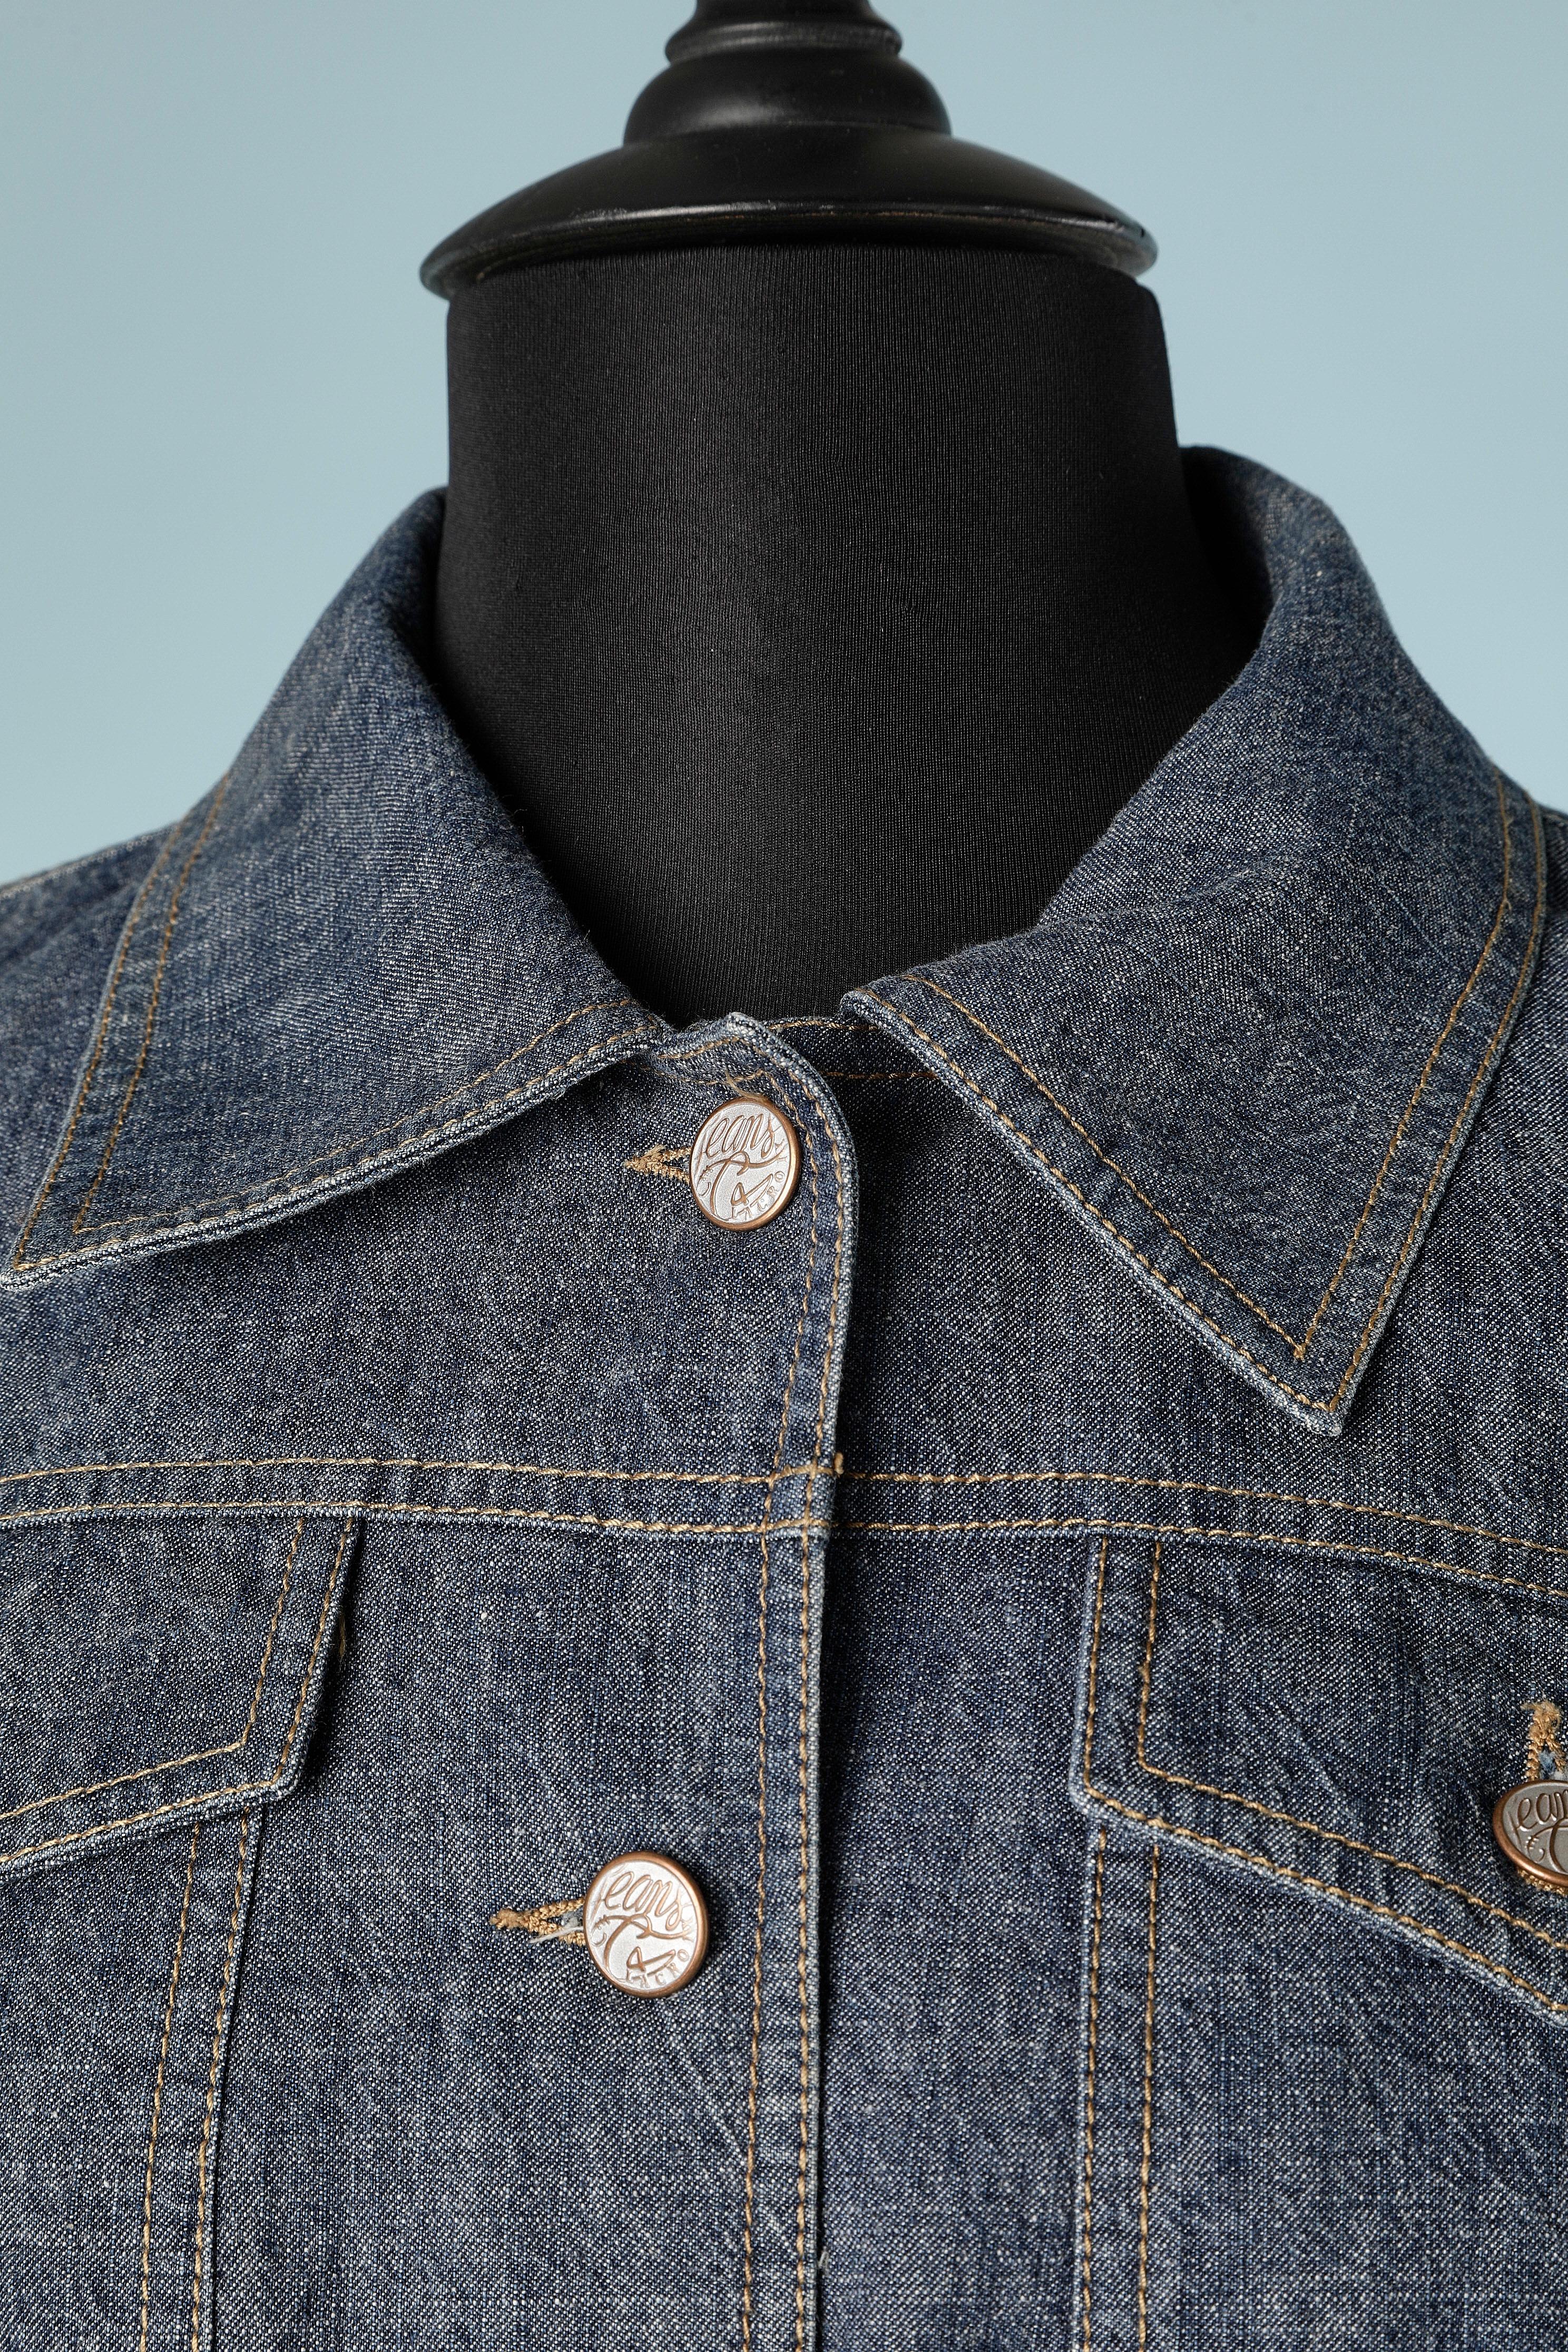 Jeansjacke mit durchsichtigen Stickereien am Ärmel und Markenknöpfen.
SIZE 38 (M)